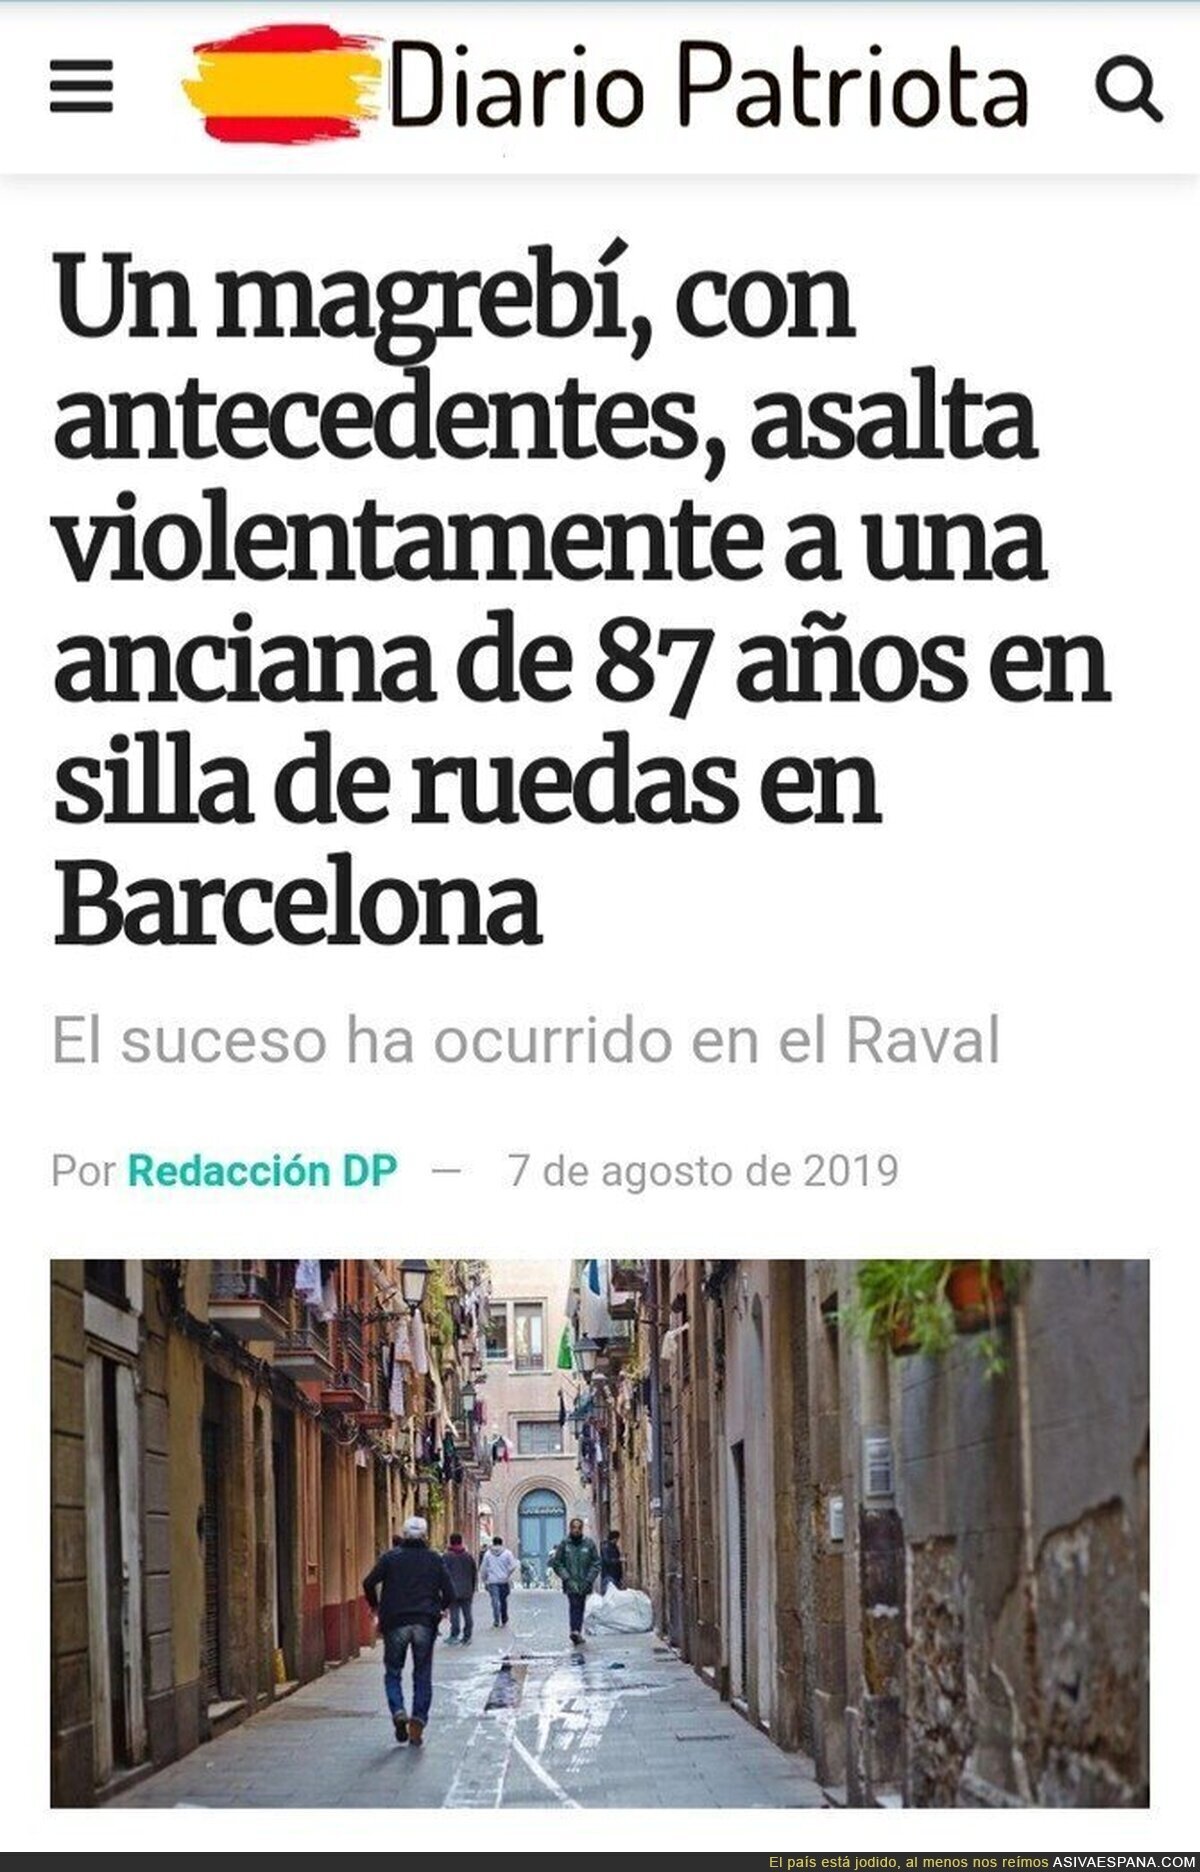 Magrebí asalta a anciana en Barcelona